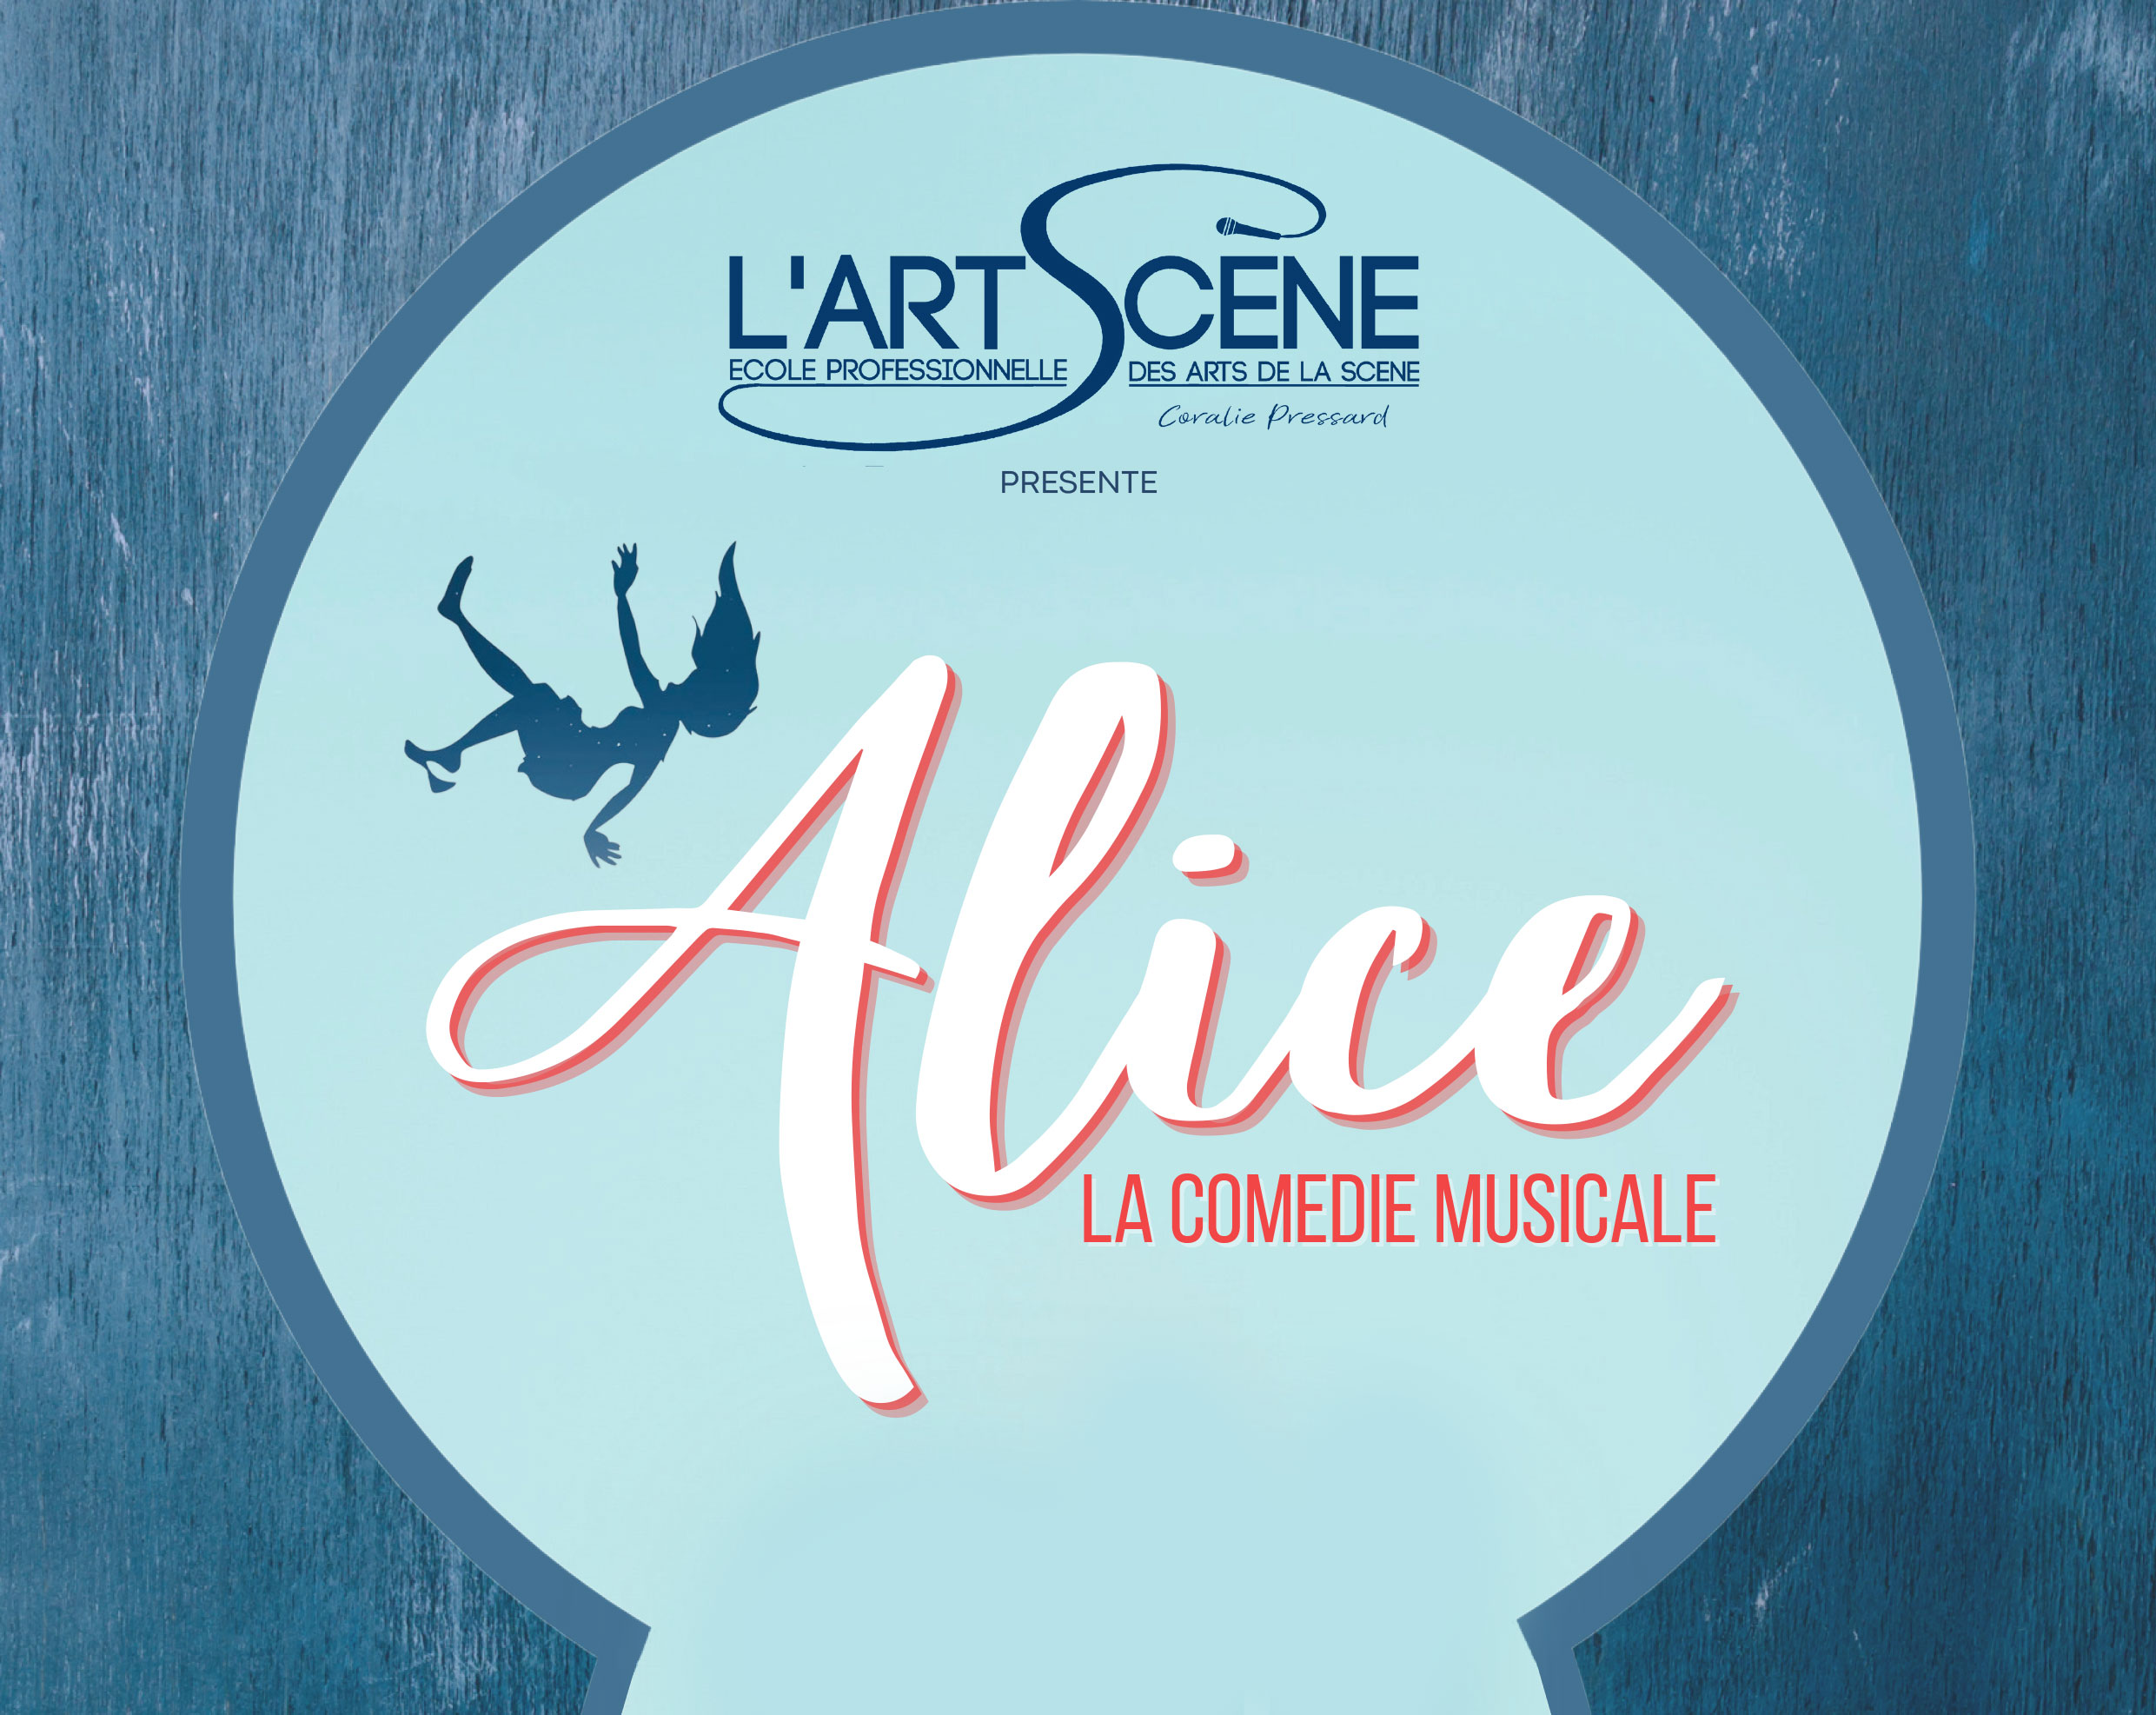 Le Théâtre Benoît XII accueille L’ArtScène, pour la présentation du spectacle « Alice, la comédie musicale », les 3 et 4 juin 2022